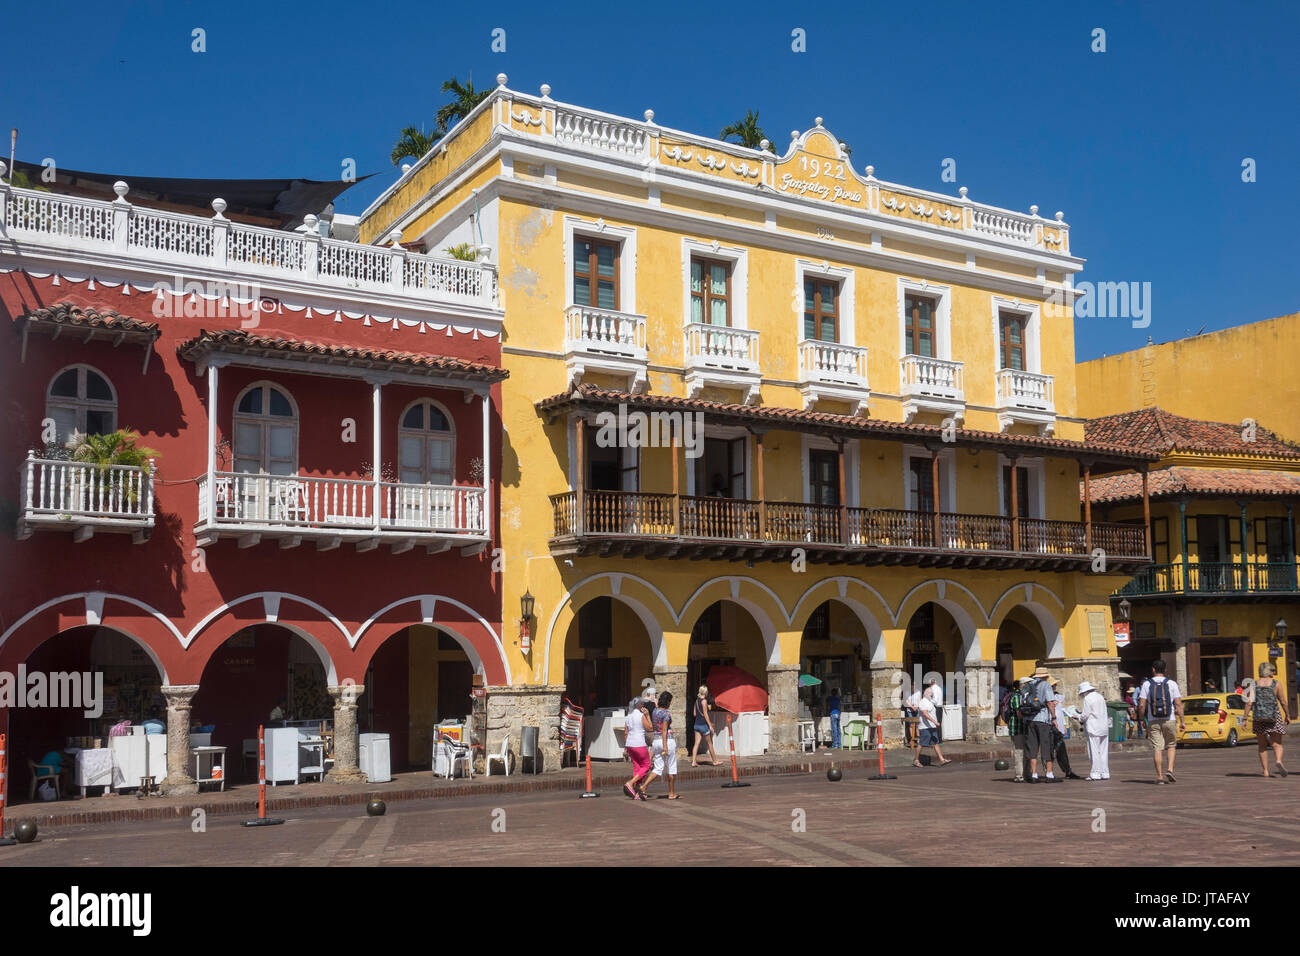 Plaza de los Coches, Cartagena, Colombia Stock Photo